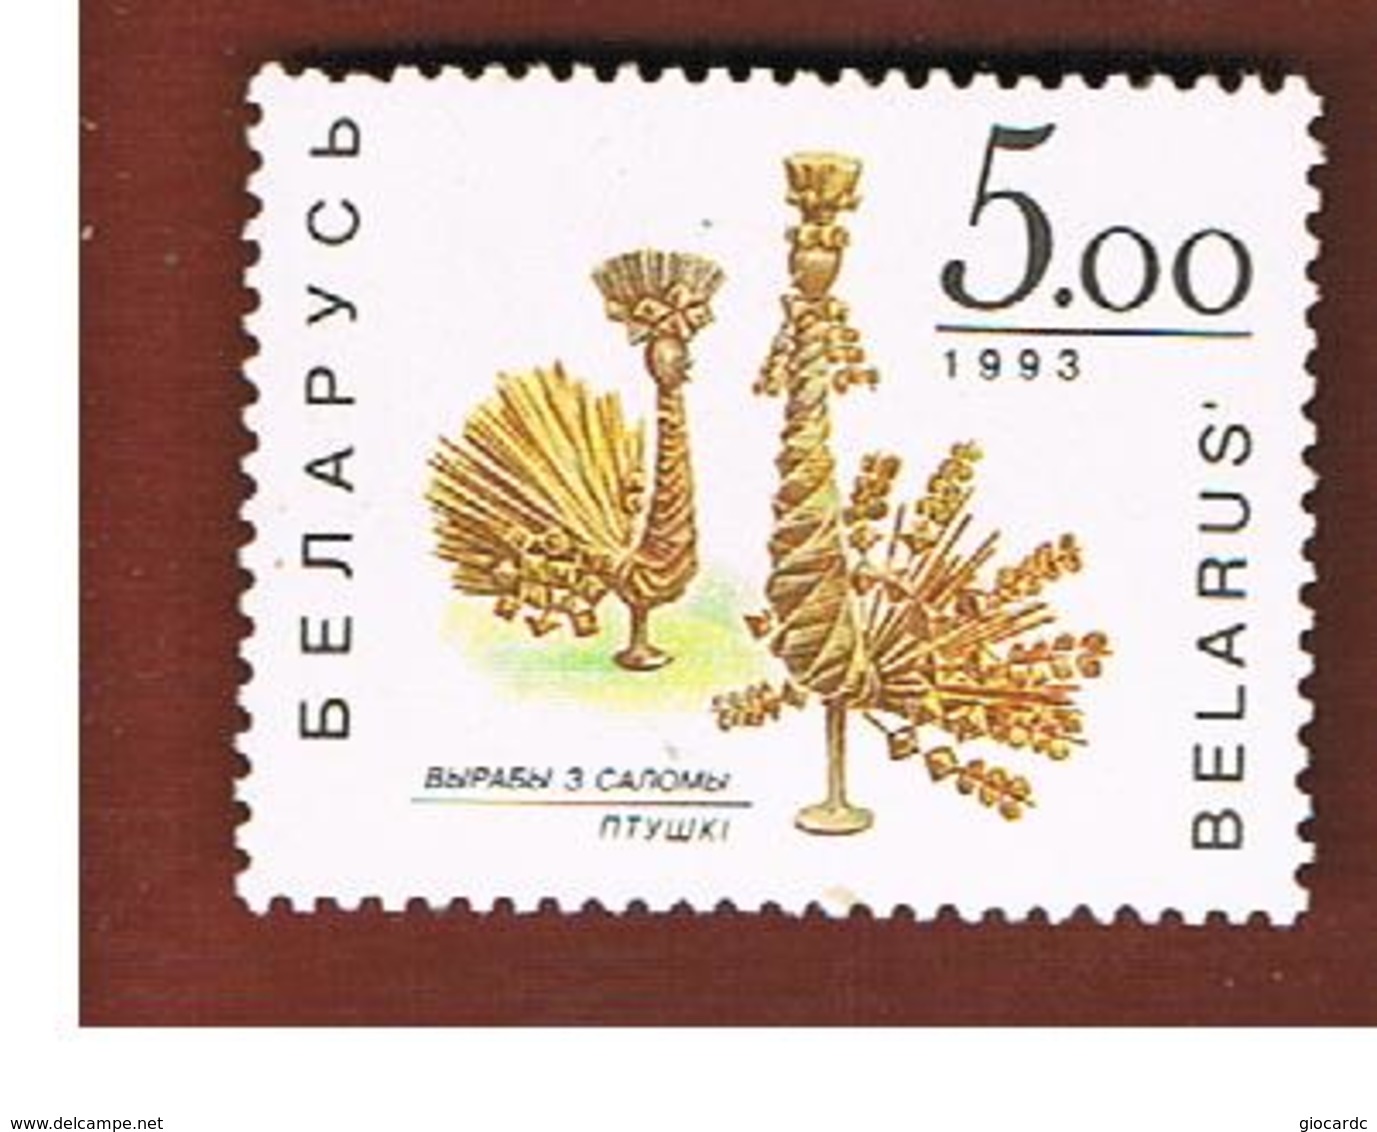 BIELORUSSIA (BELARUS)  -  SG 44   -      1992  CORN DOLLIES   -   MINT (**) - Bielorussia